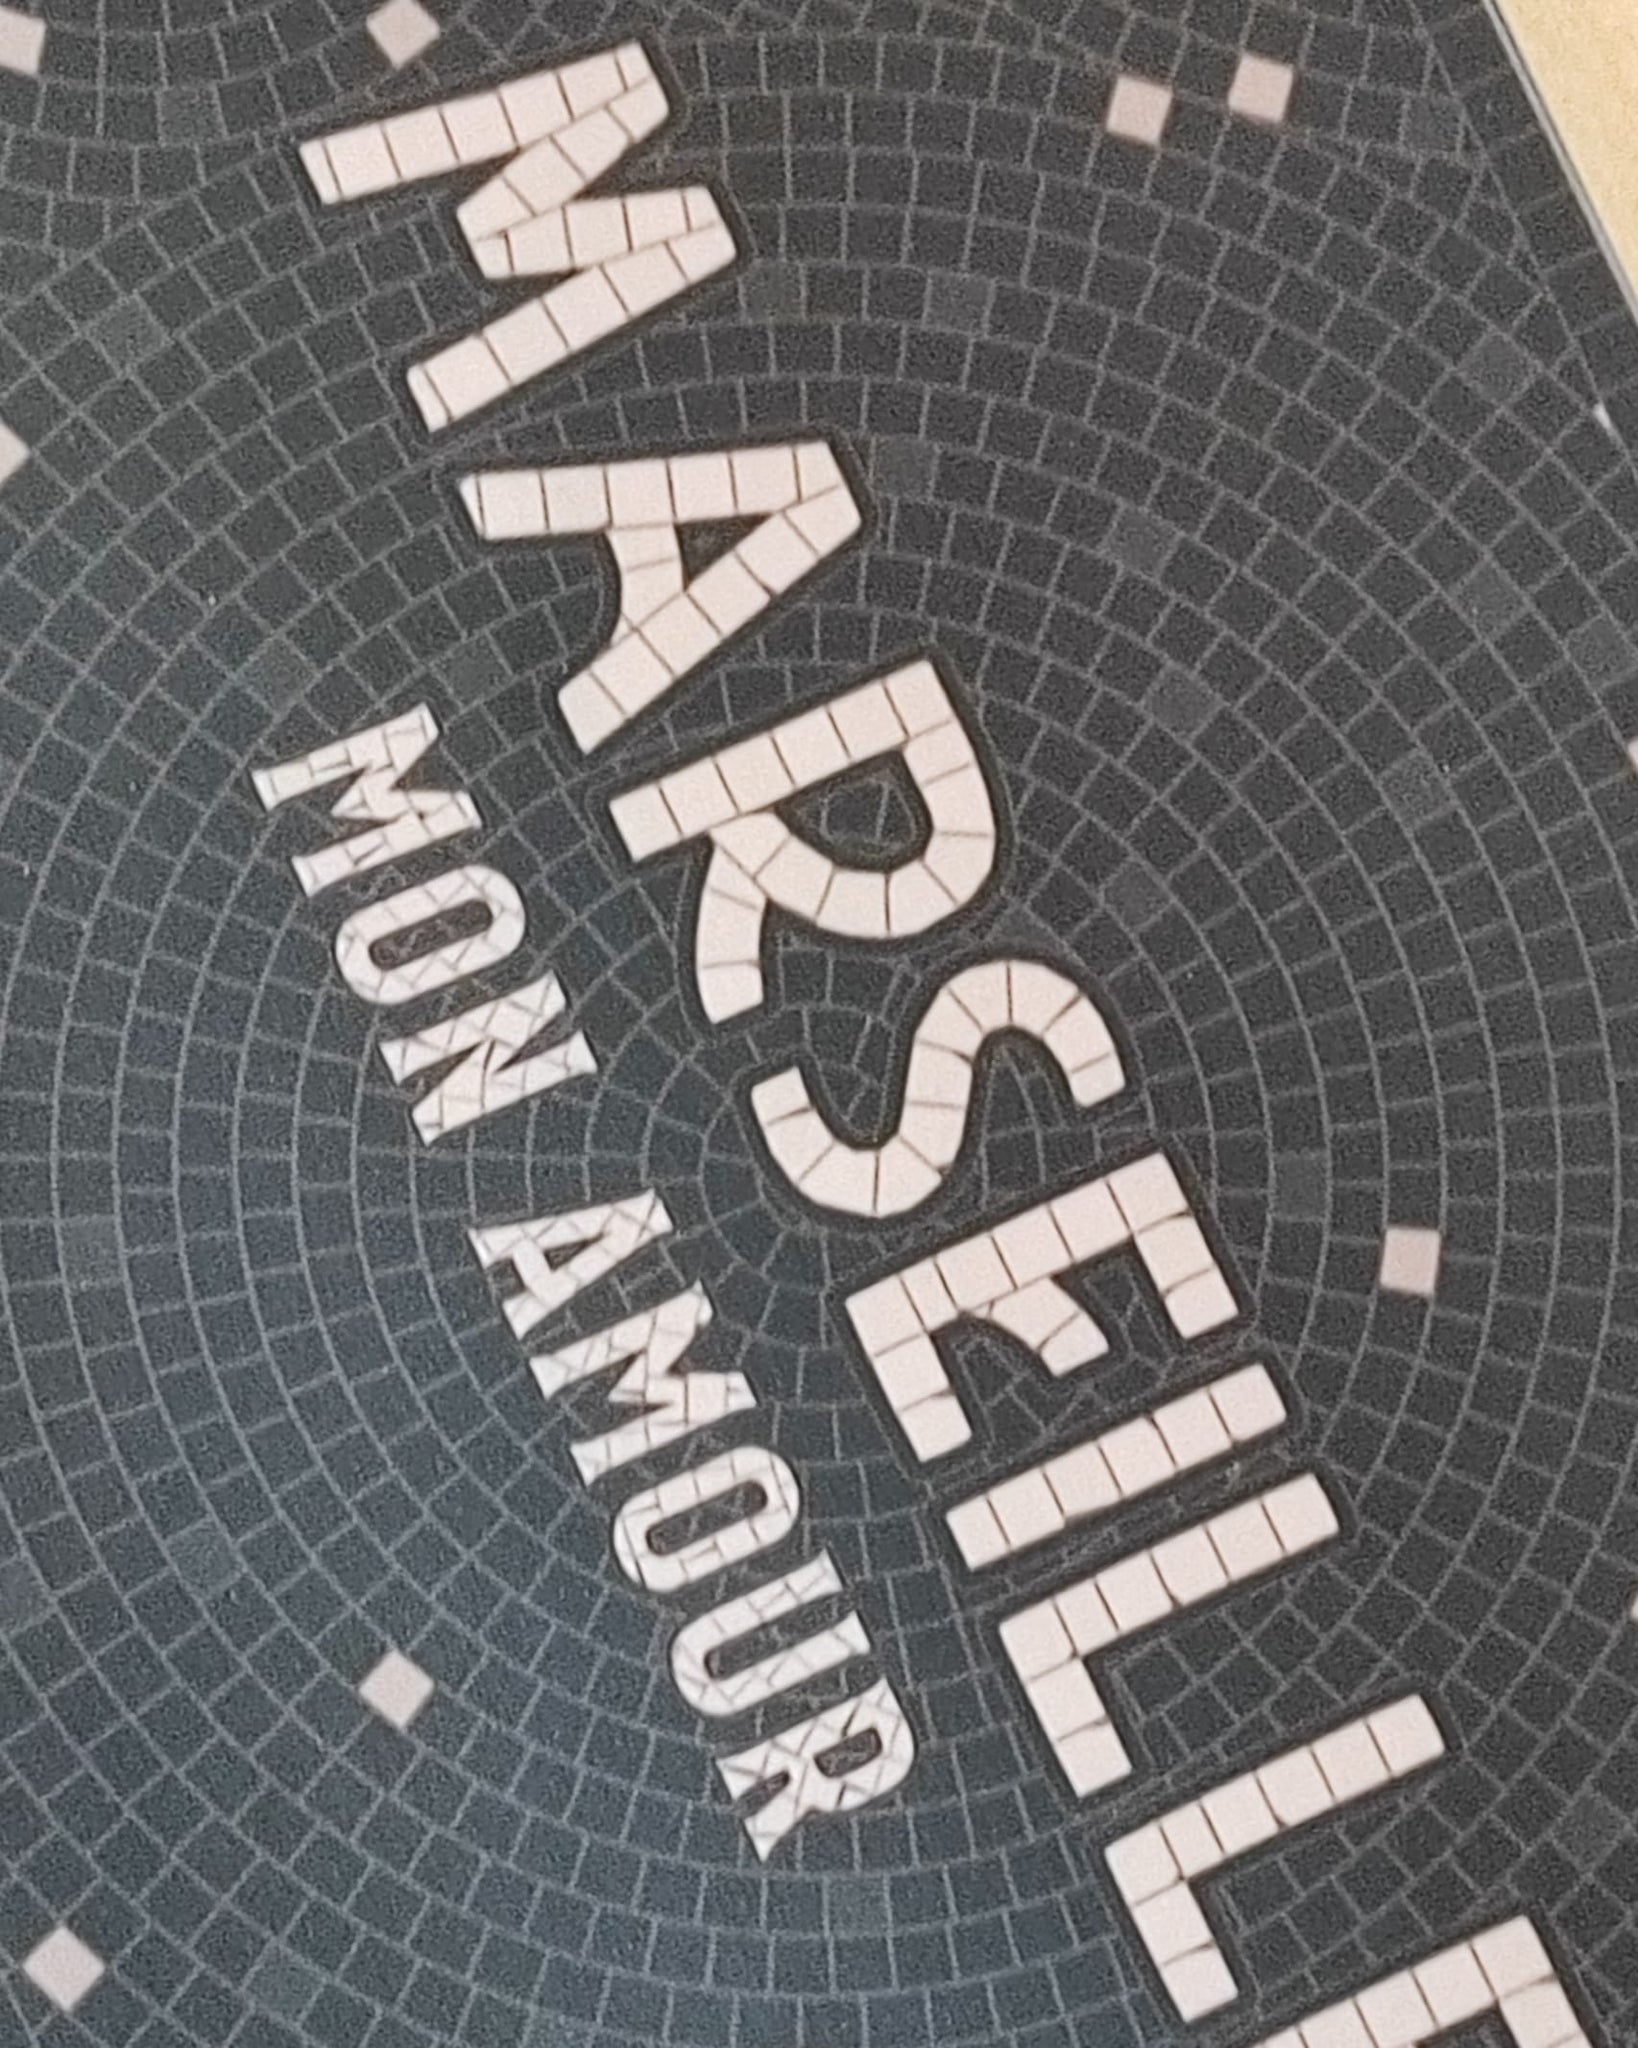 Set de table Marseille Mon Amour